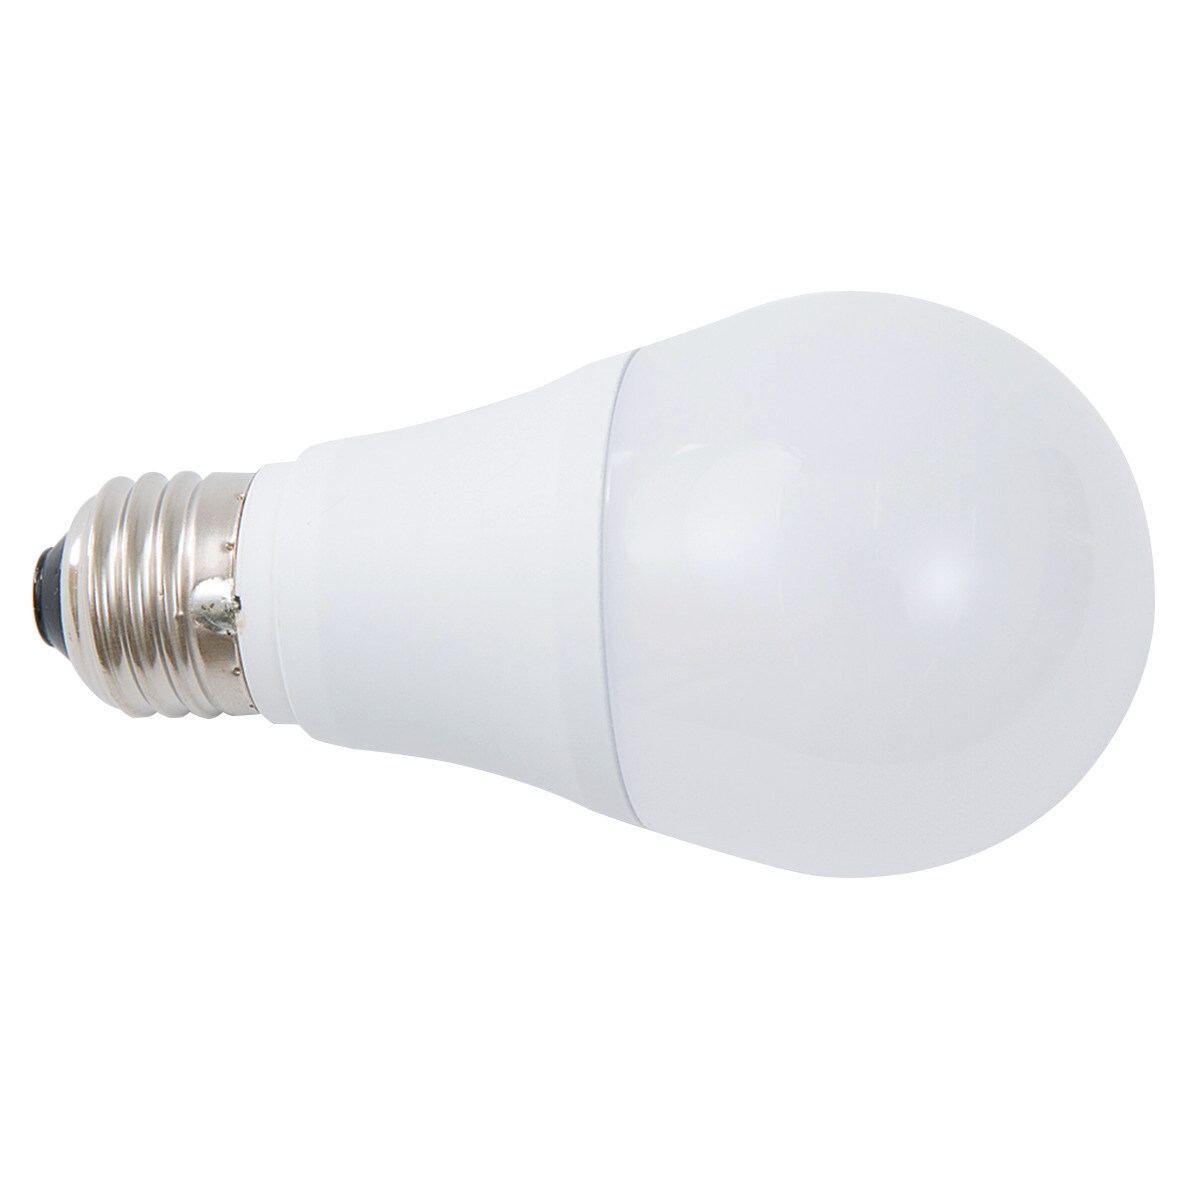 LED電球(E26口金 100W相当 電球色 LEE100WM-L)